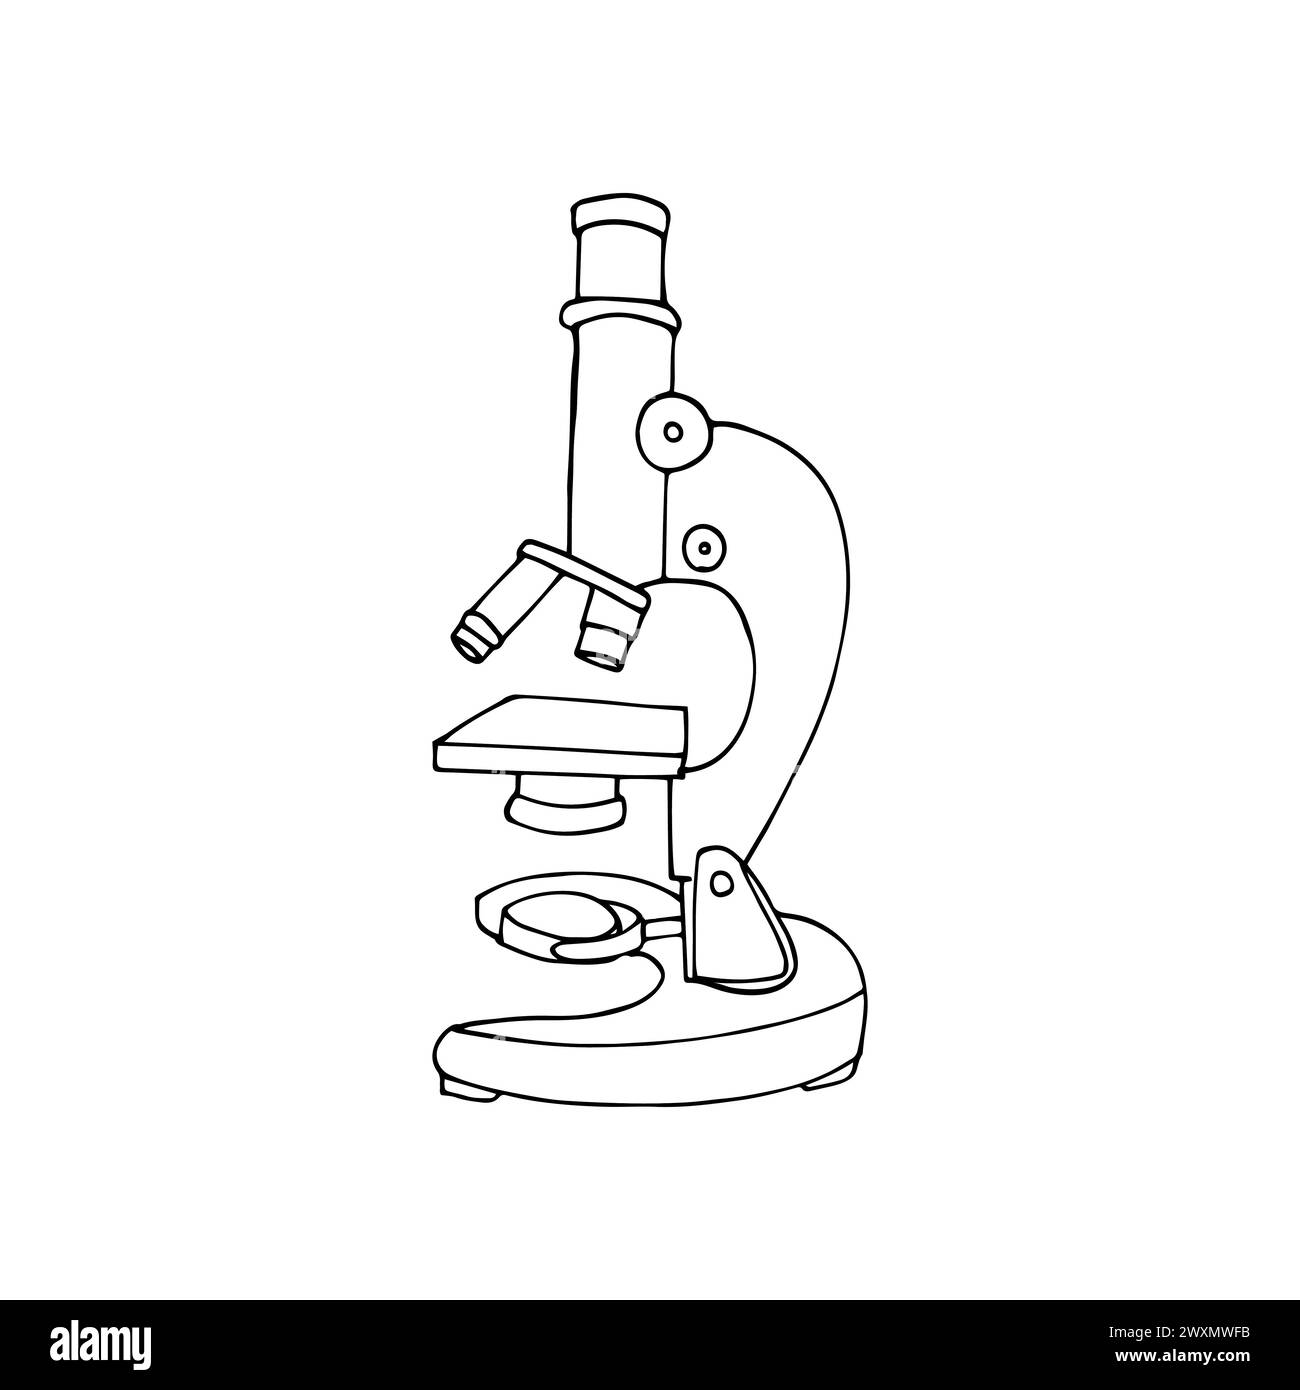 Handgezeichnetes Labormikroskop zur Vergrößerung der Bakteriengröße unter der Linse. Isolierte einfache Vektorillustration im Doodle-Stil. Stock Vektor